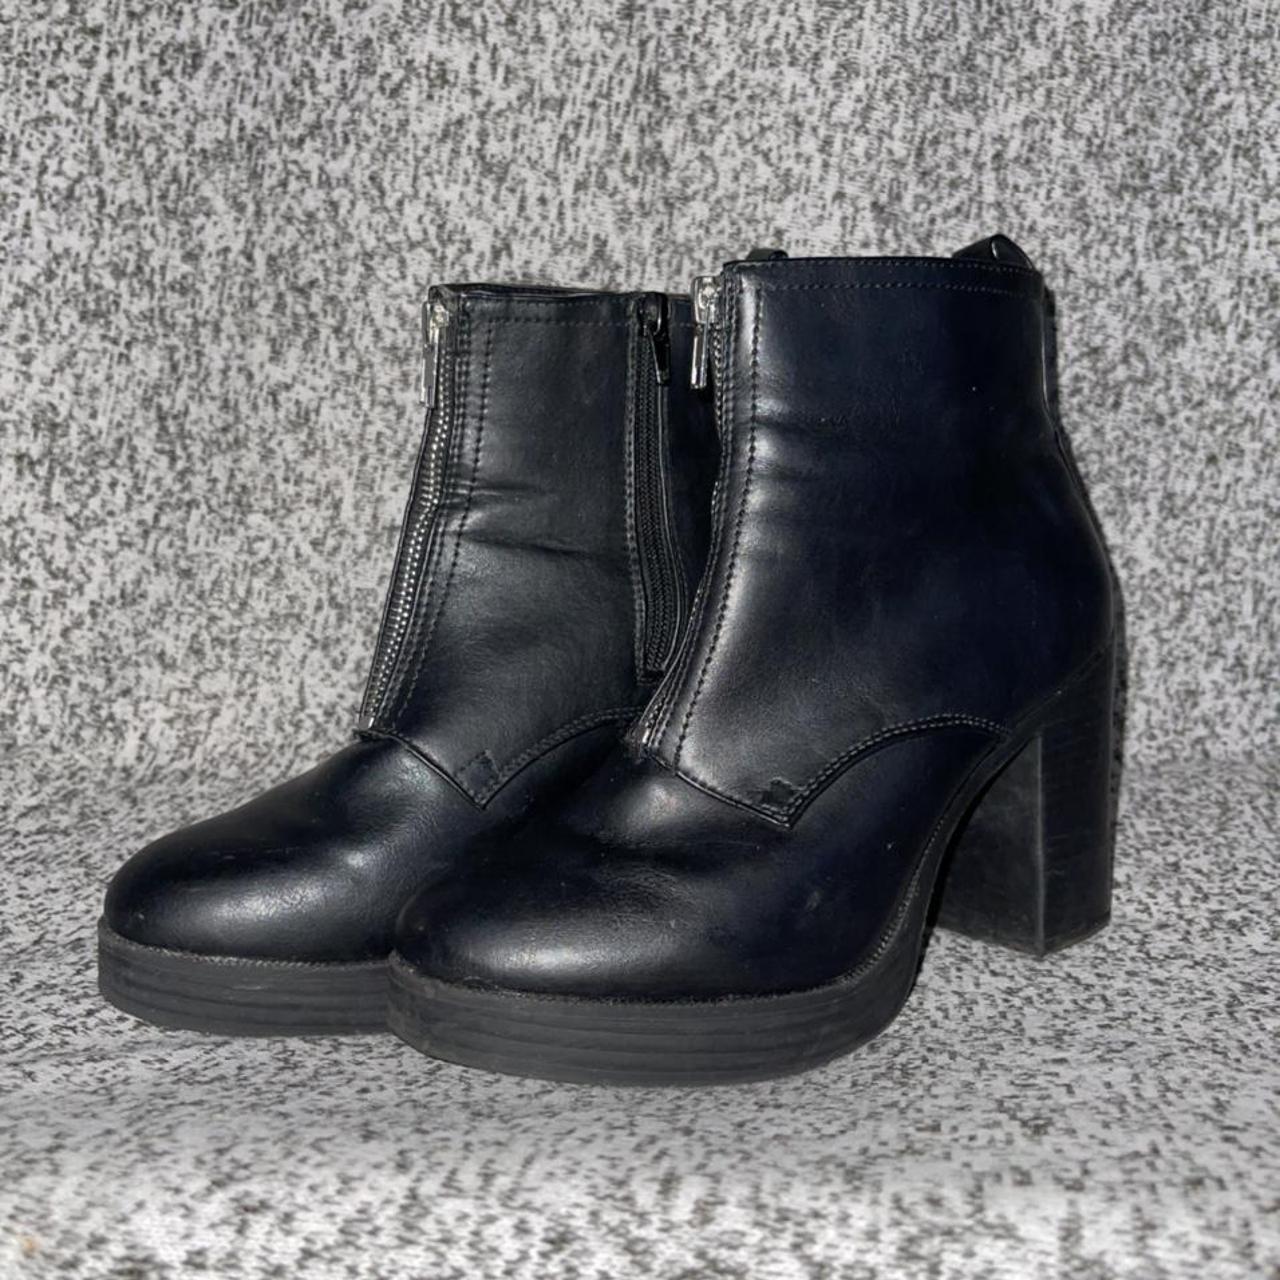 Primark Women's Black Boots | Depop